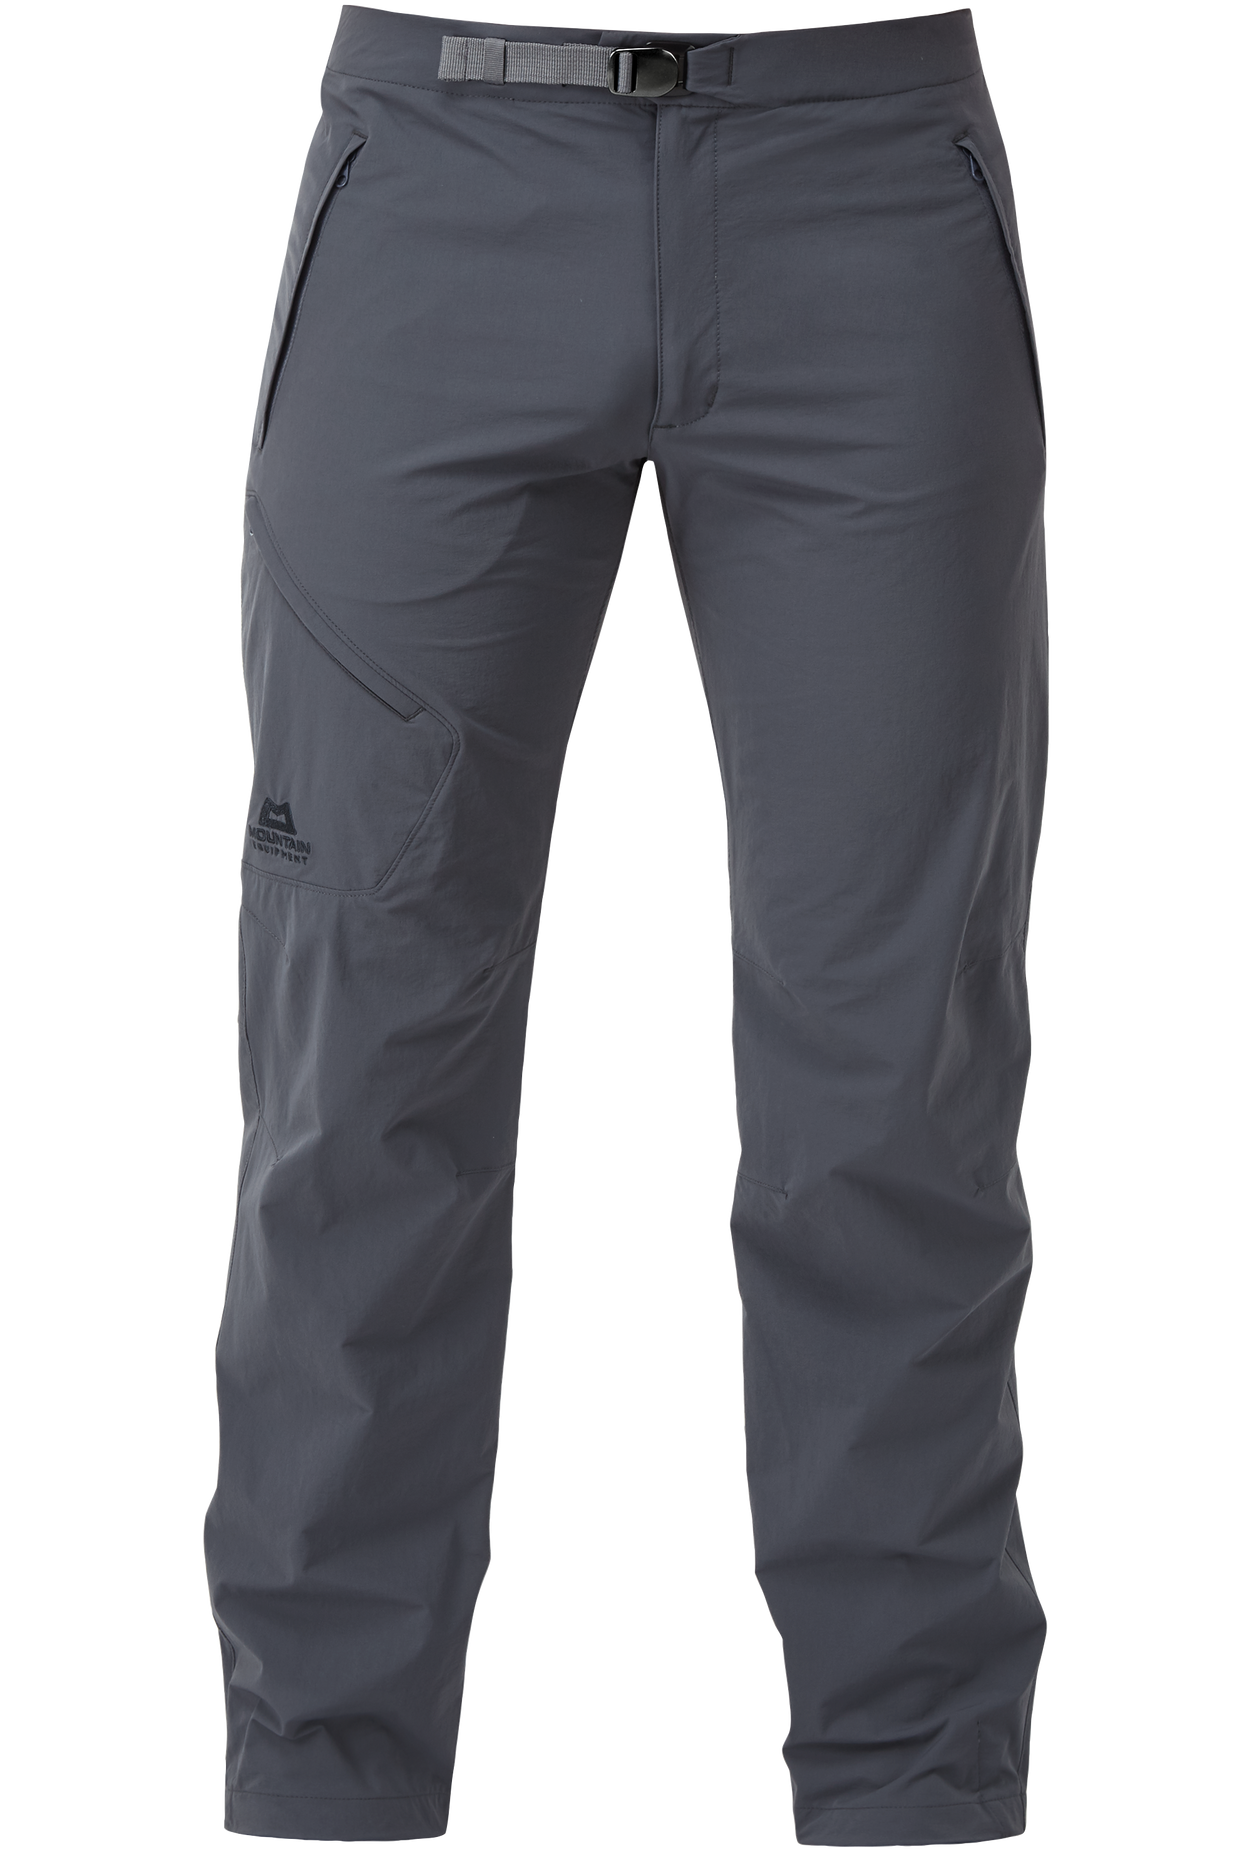 Mountain Equipment pánské softshellové kalhoty Comici Pant - zkrácené Barva: Ombre Blue, Velikost: 36/XL